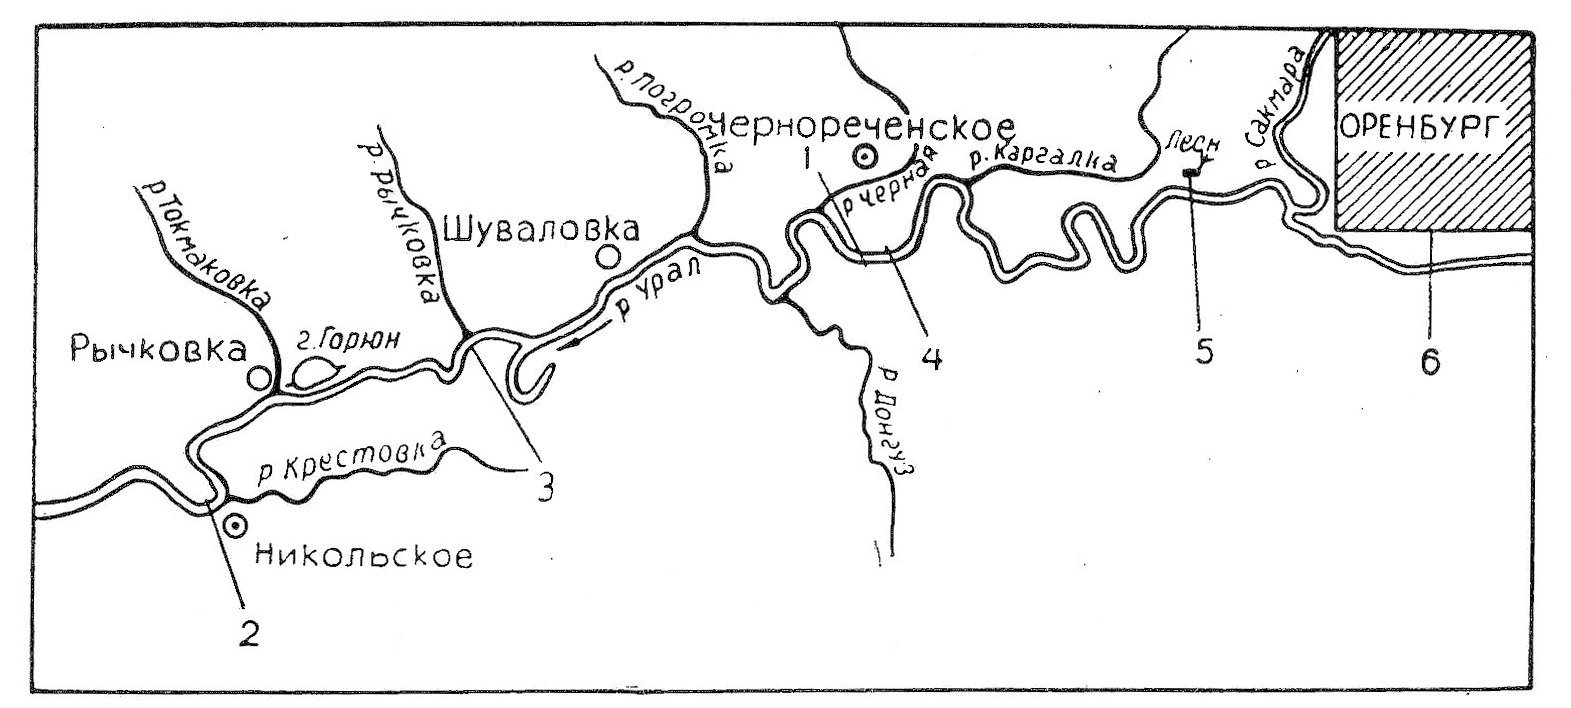 Река орь на карте. Река Урал на карте. Схема реки Урал. Схема реки Сакмара. Схема реки Сакмара в Оренбургской области.